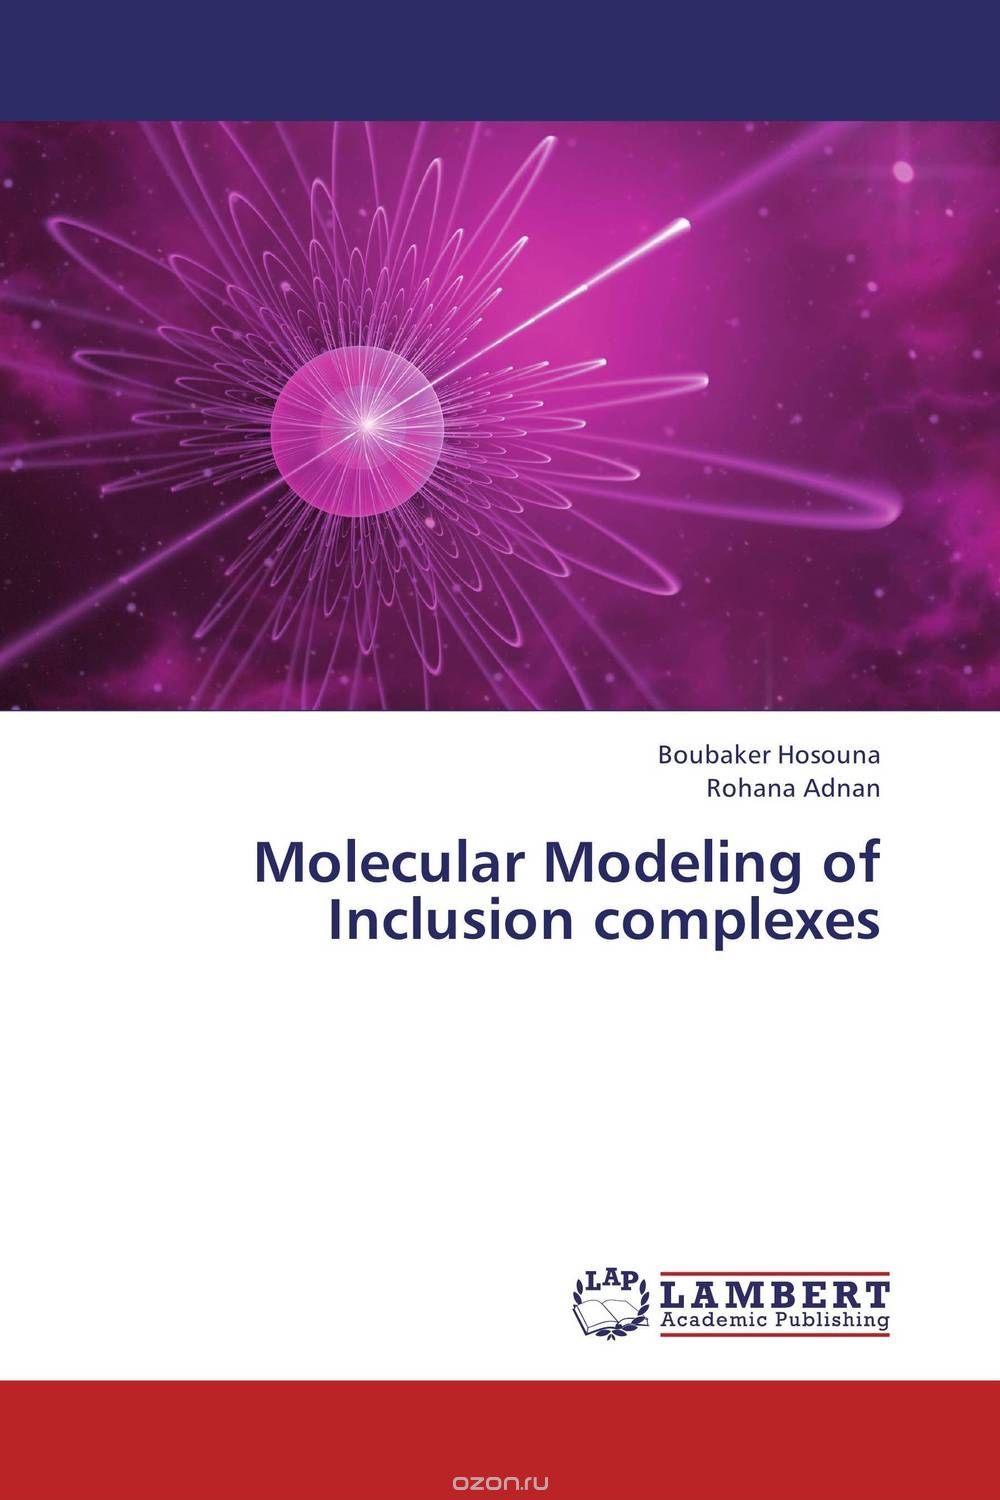 Скачать книгу "Molecular Modeling of Inclusion complexes"